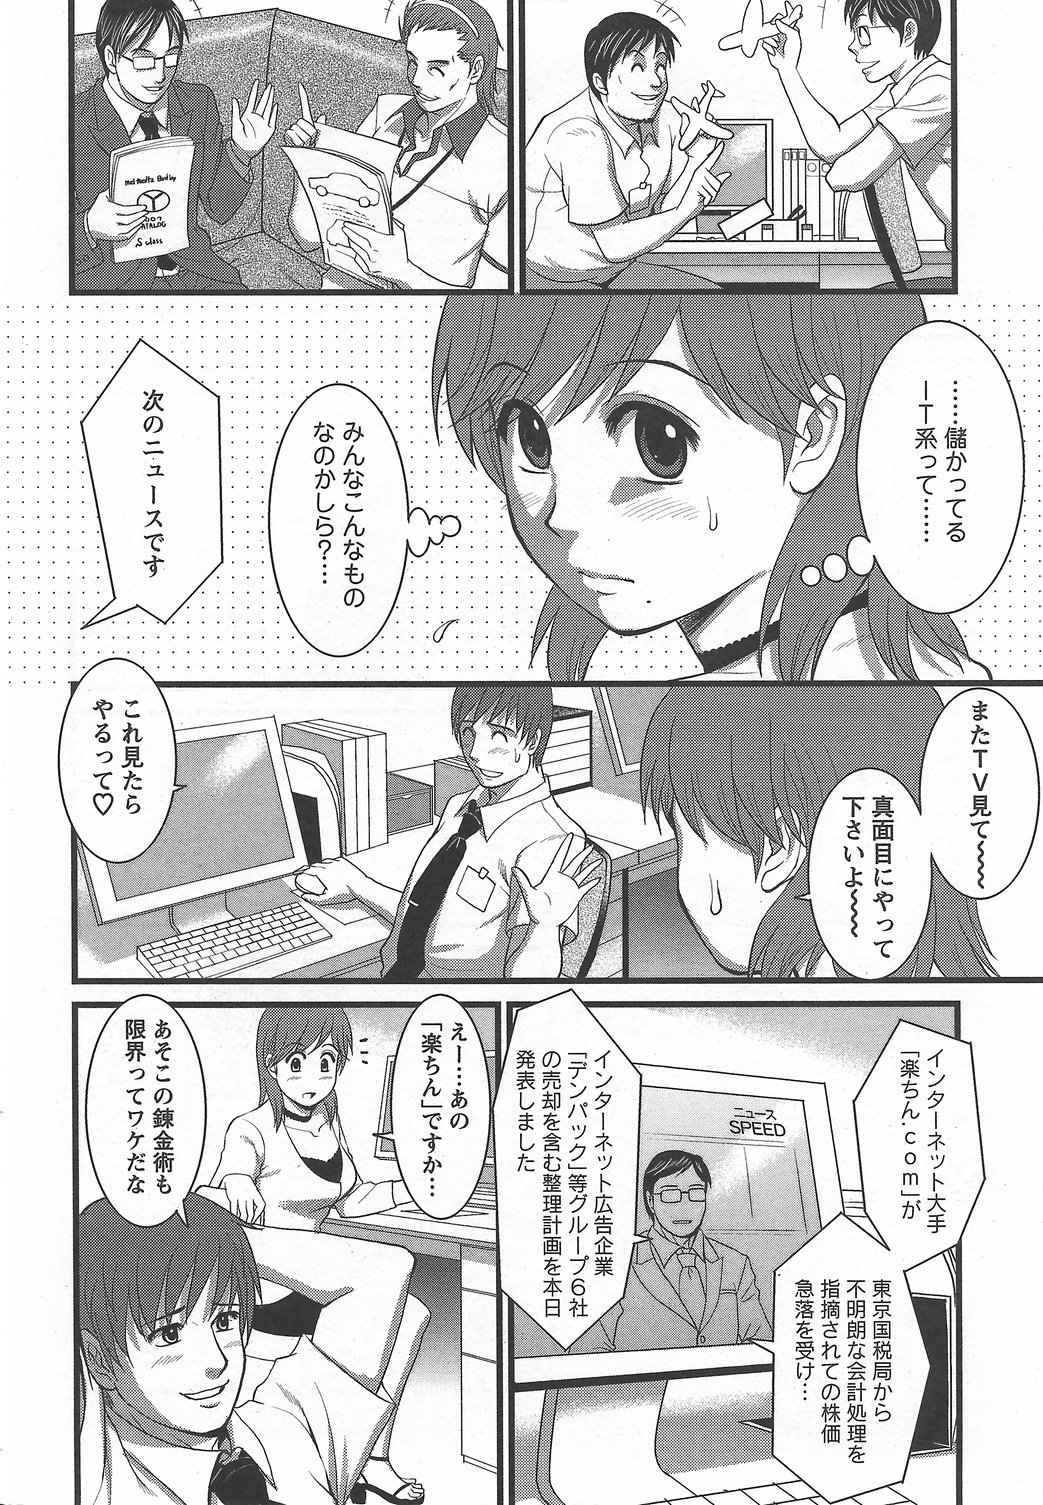 Haken no Muuko-san 6 [Saigado] page 7 full